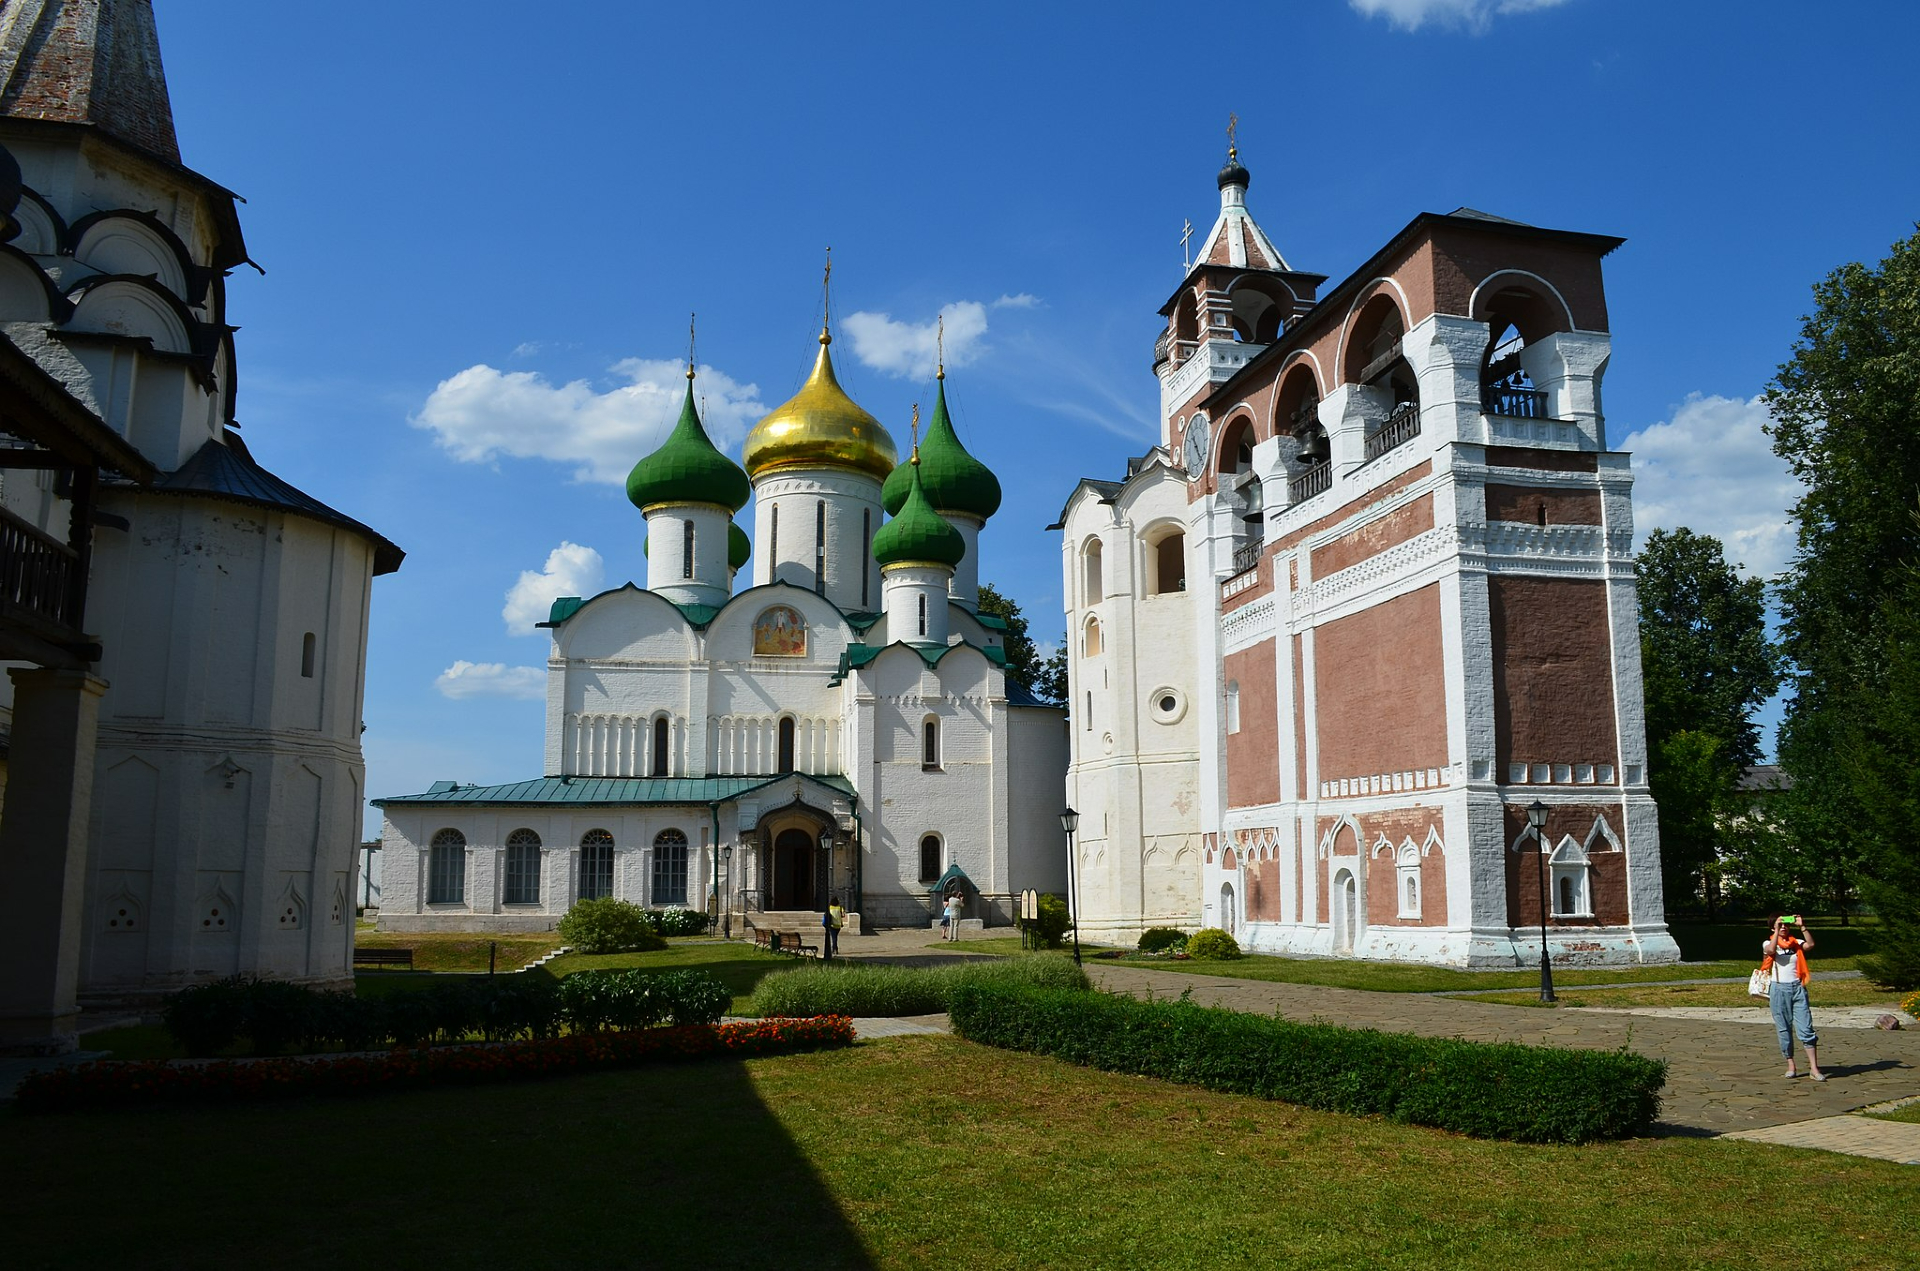 Спасо-Евфимиев мужской монастырь основал в 1352 году преподобный Евфимий по инициативе Суздальского князя Бориса Константиновича